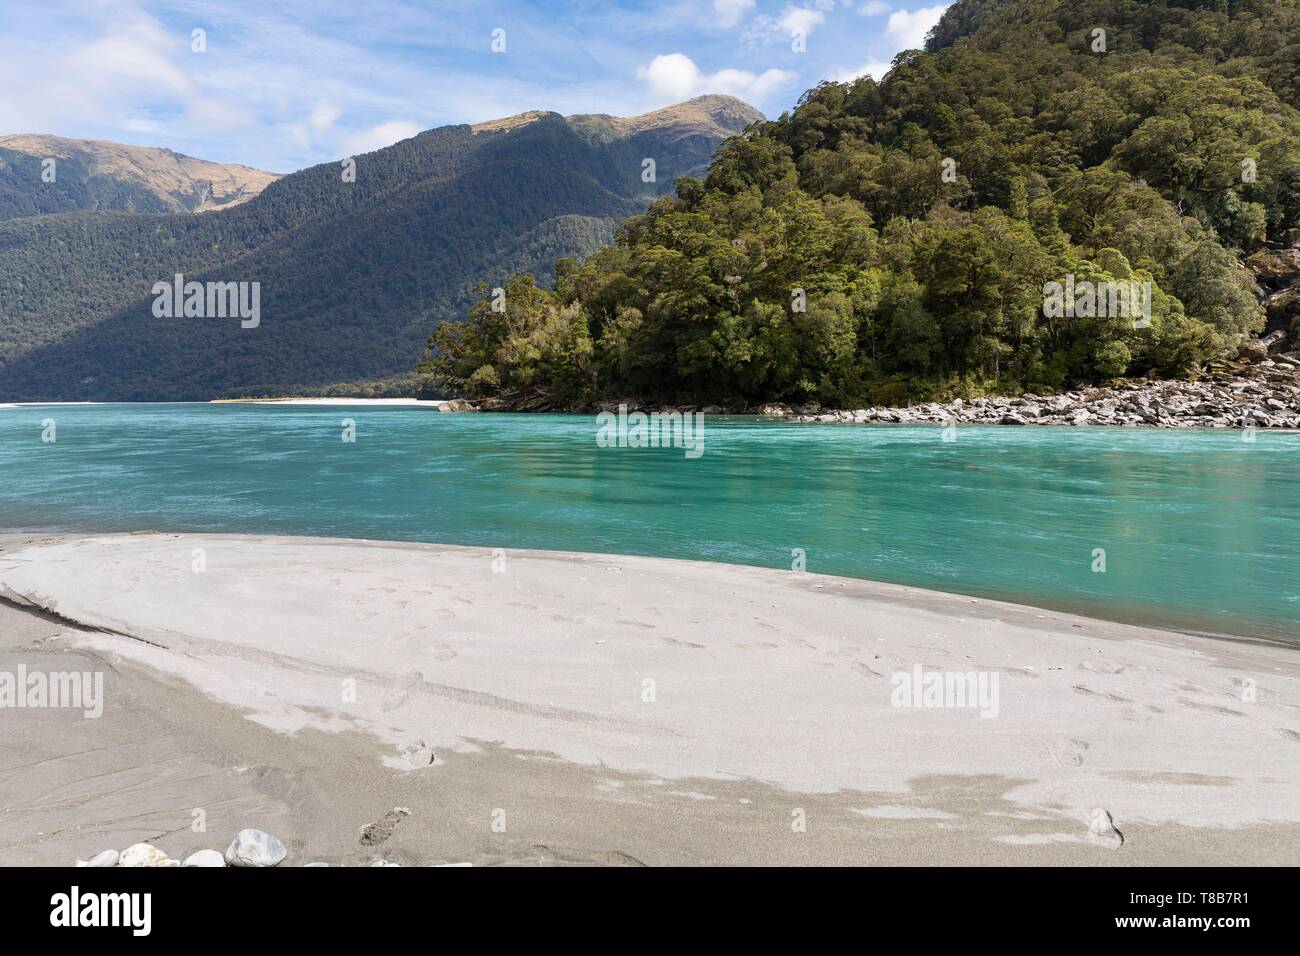 Nuova Zelanda, Isola del Sud, Costa Occidentale Regione, montare gli aspiranti National Park, etichettati Sito Patrimonio Mondiale dell'Unesco, fiume Haast Foto Stock